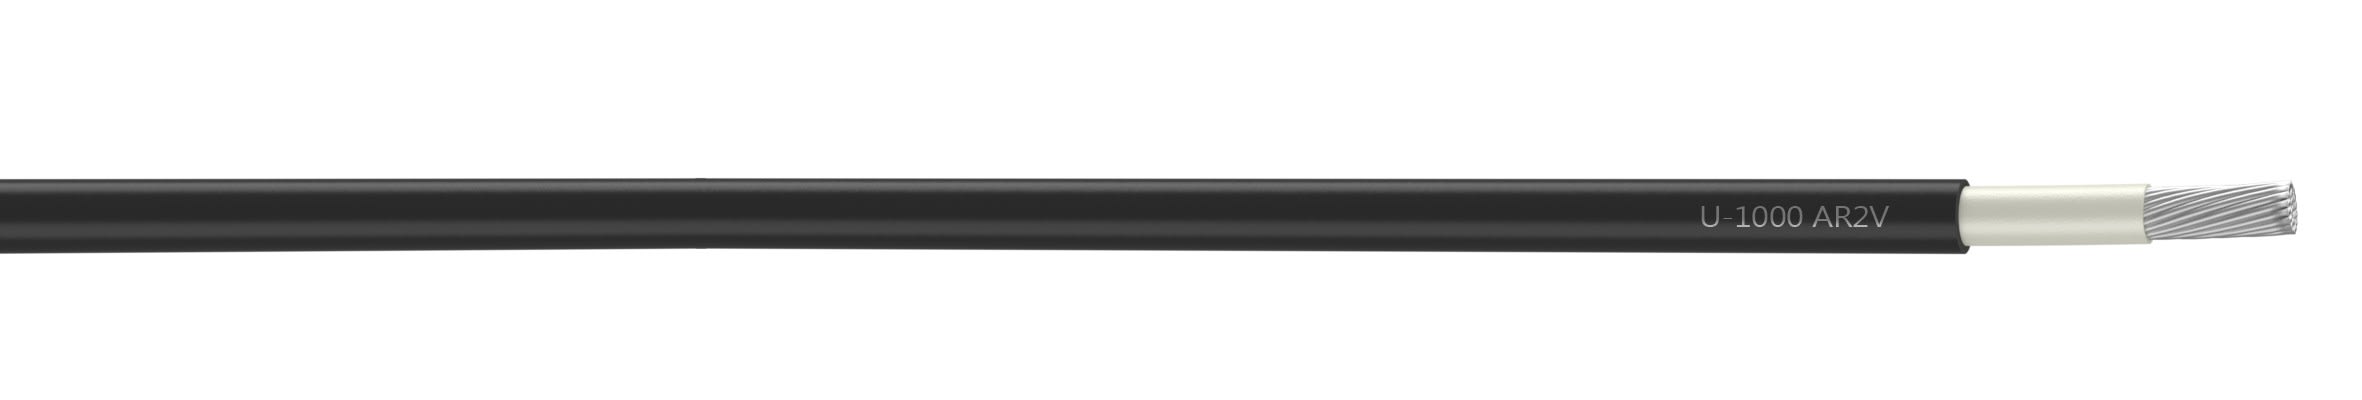 Nexans - Câble rigide U-1000 AR2V aluminium 1x500 longueur à la coupe